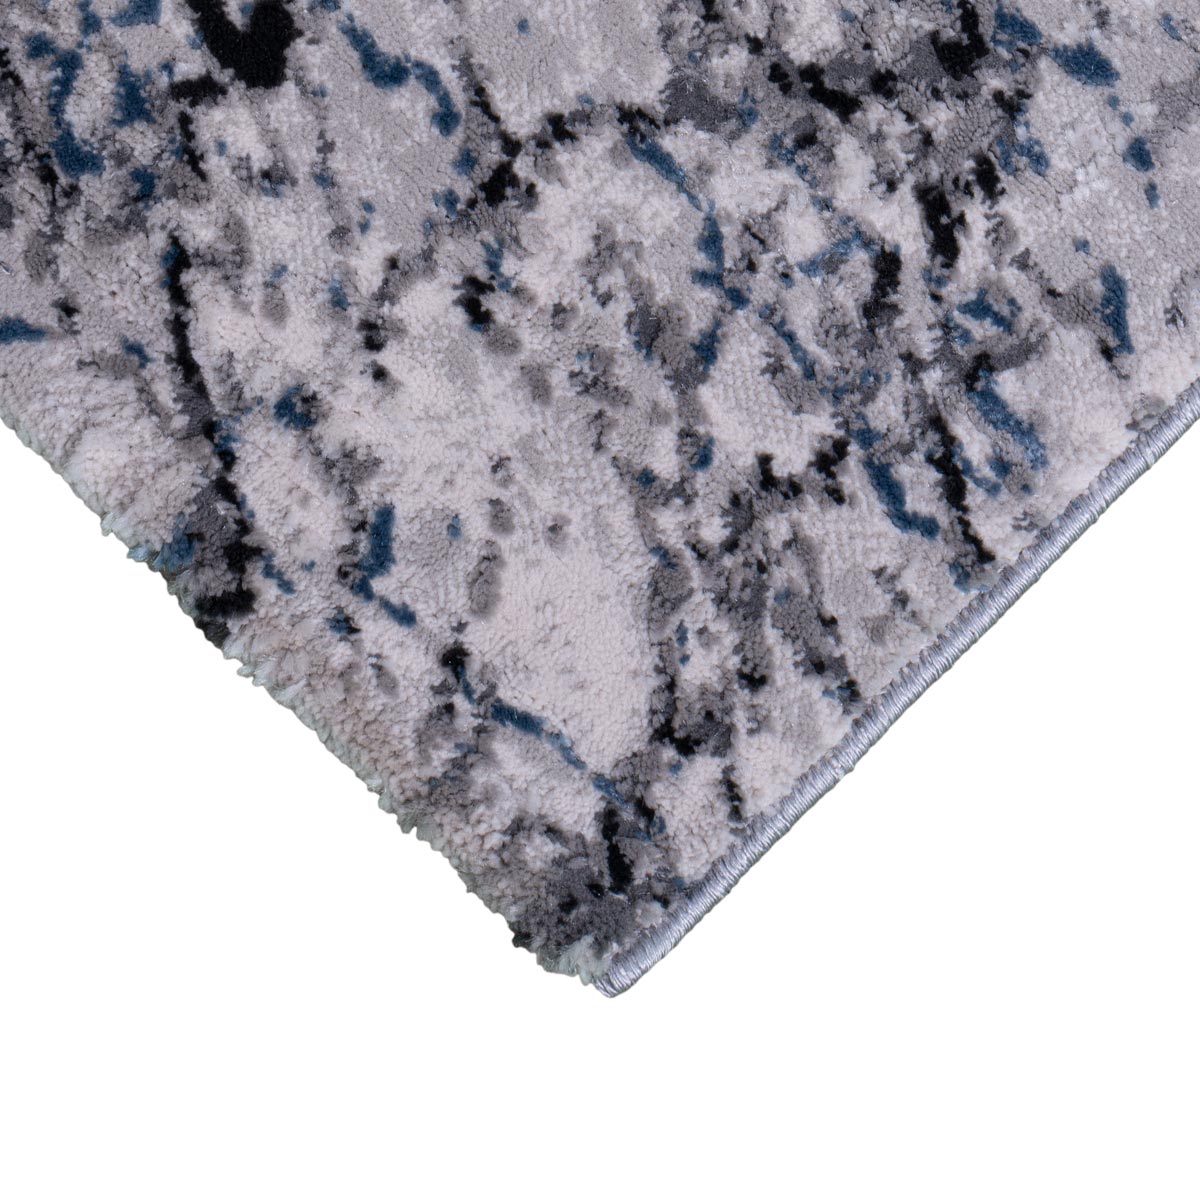 שטיח טורונטו 24 אפור/אפור כהה/כחול | השטיח האדום